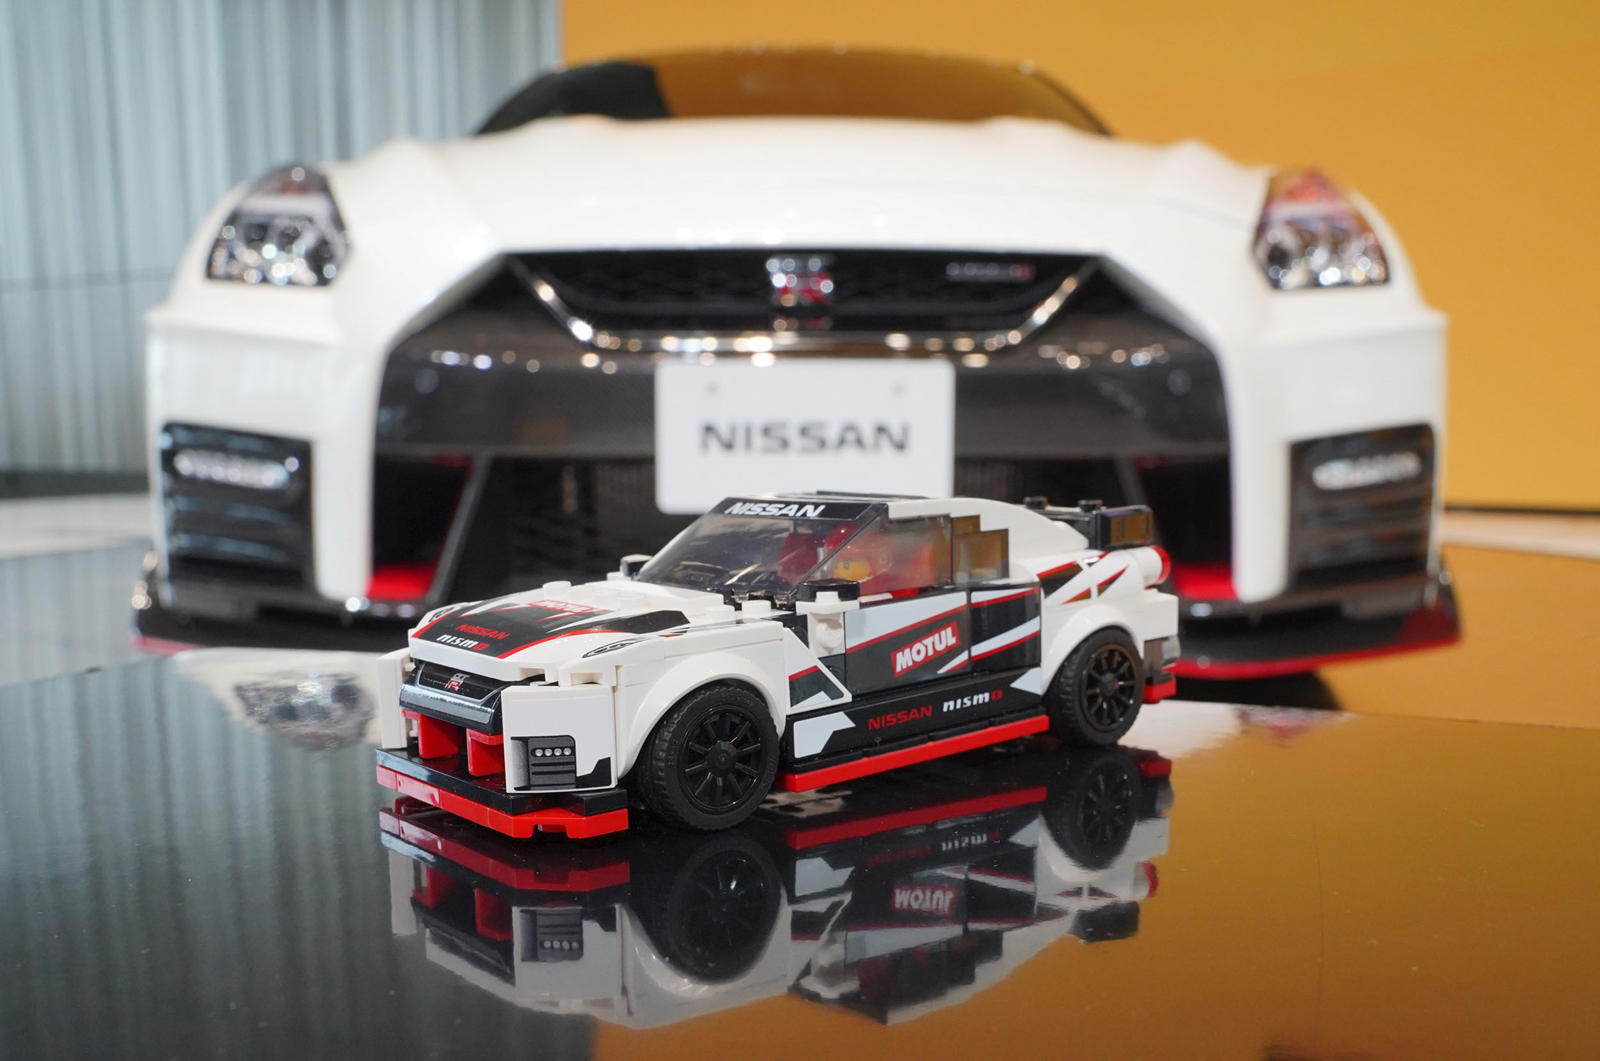 Lego Speed Champions Nissan GT-R Nismo должен появиться на полках магазинов игрушек по всему миру в начале нового года. Цены пока не были объявлены, но мы не ожидаем, что оно будет продаваться гораздо дороже, чем 15 долларов, которые Lego берет за др